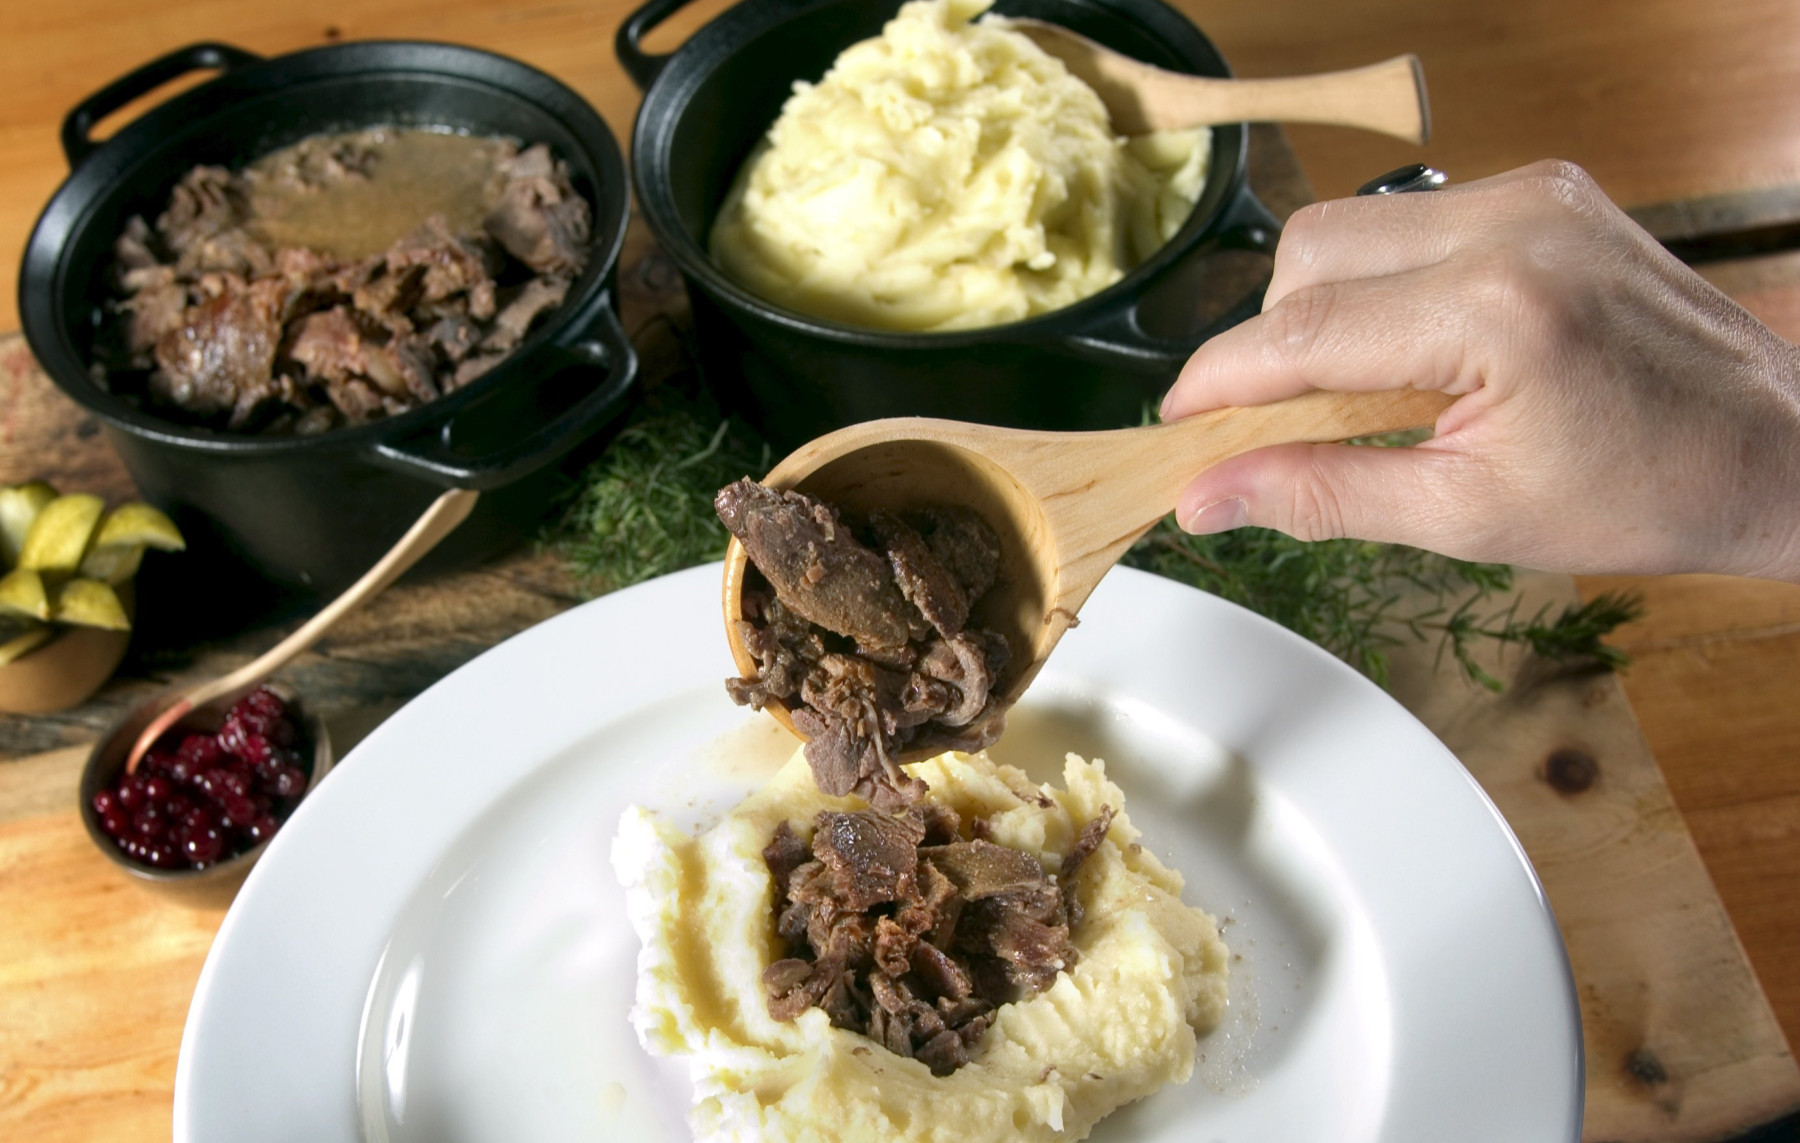 On voit une main servir des morceaux de viande de renne sur une assiette contenant de la purée de pommes de terre.